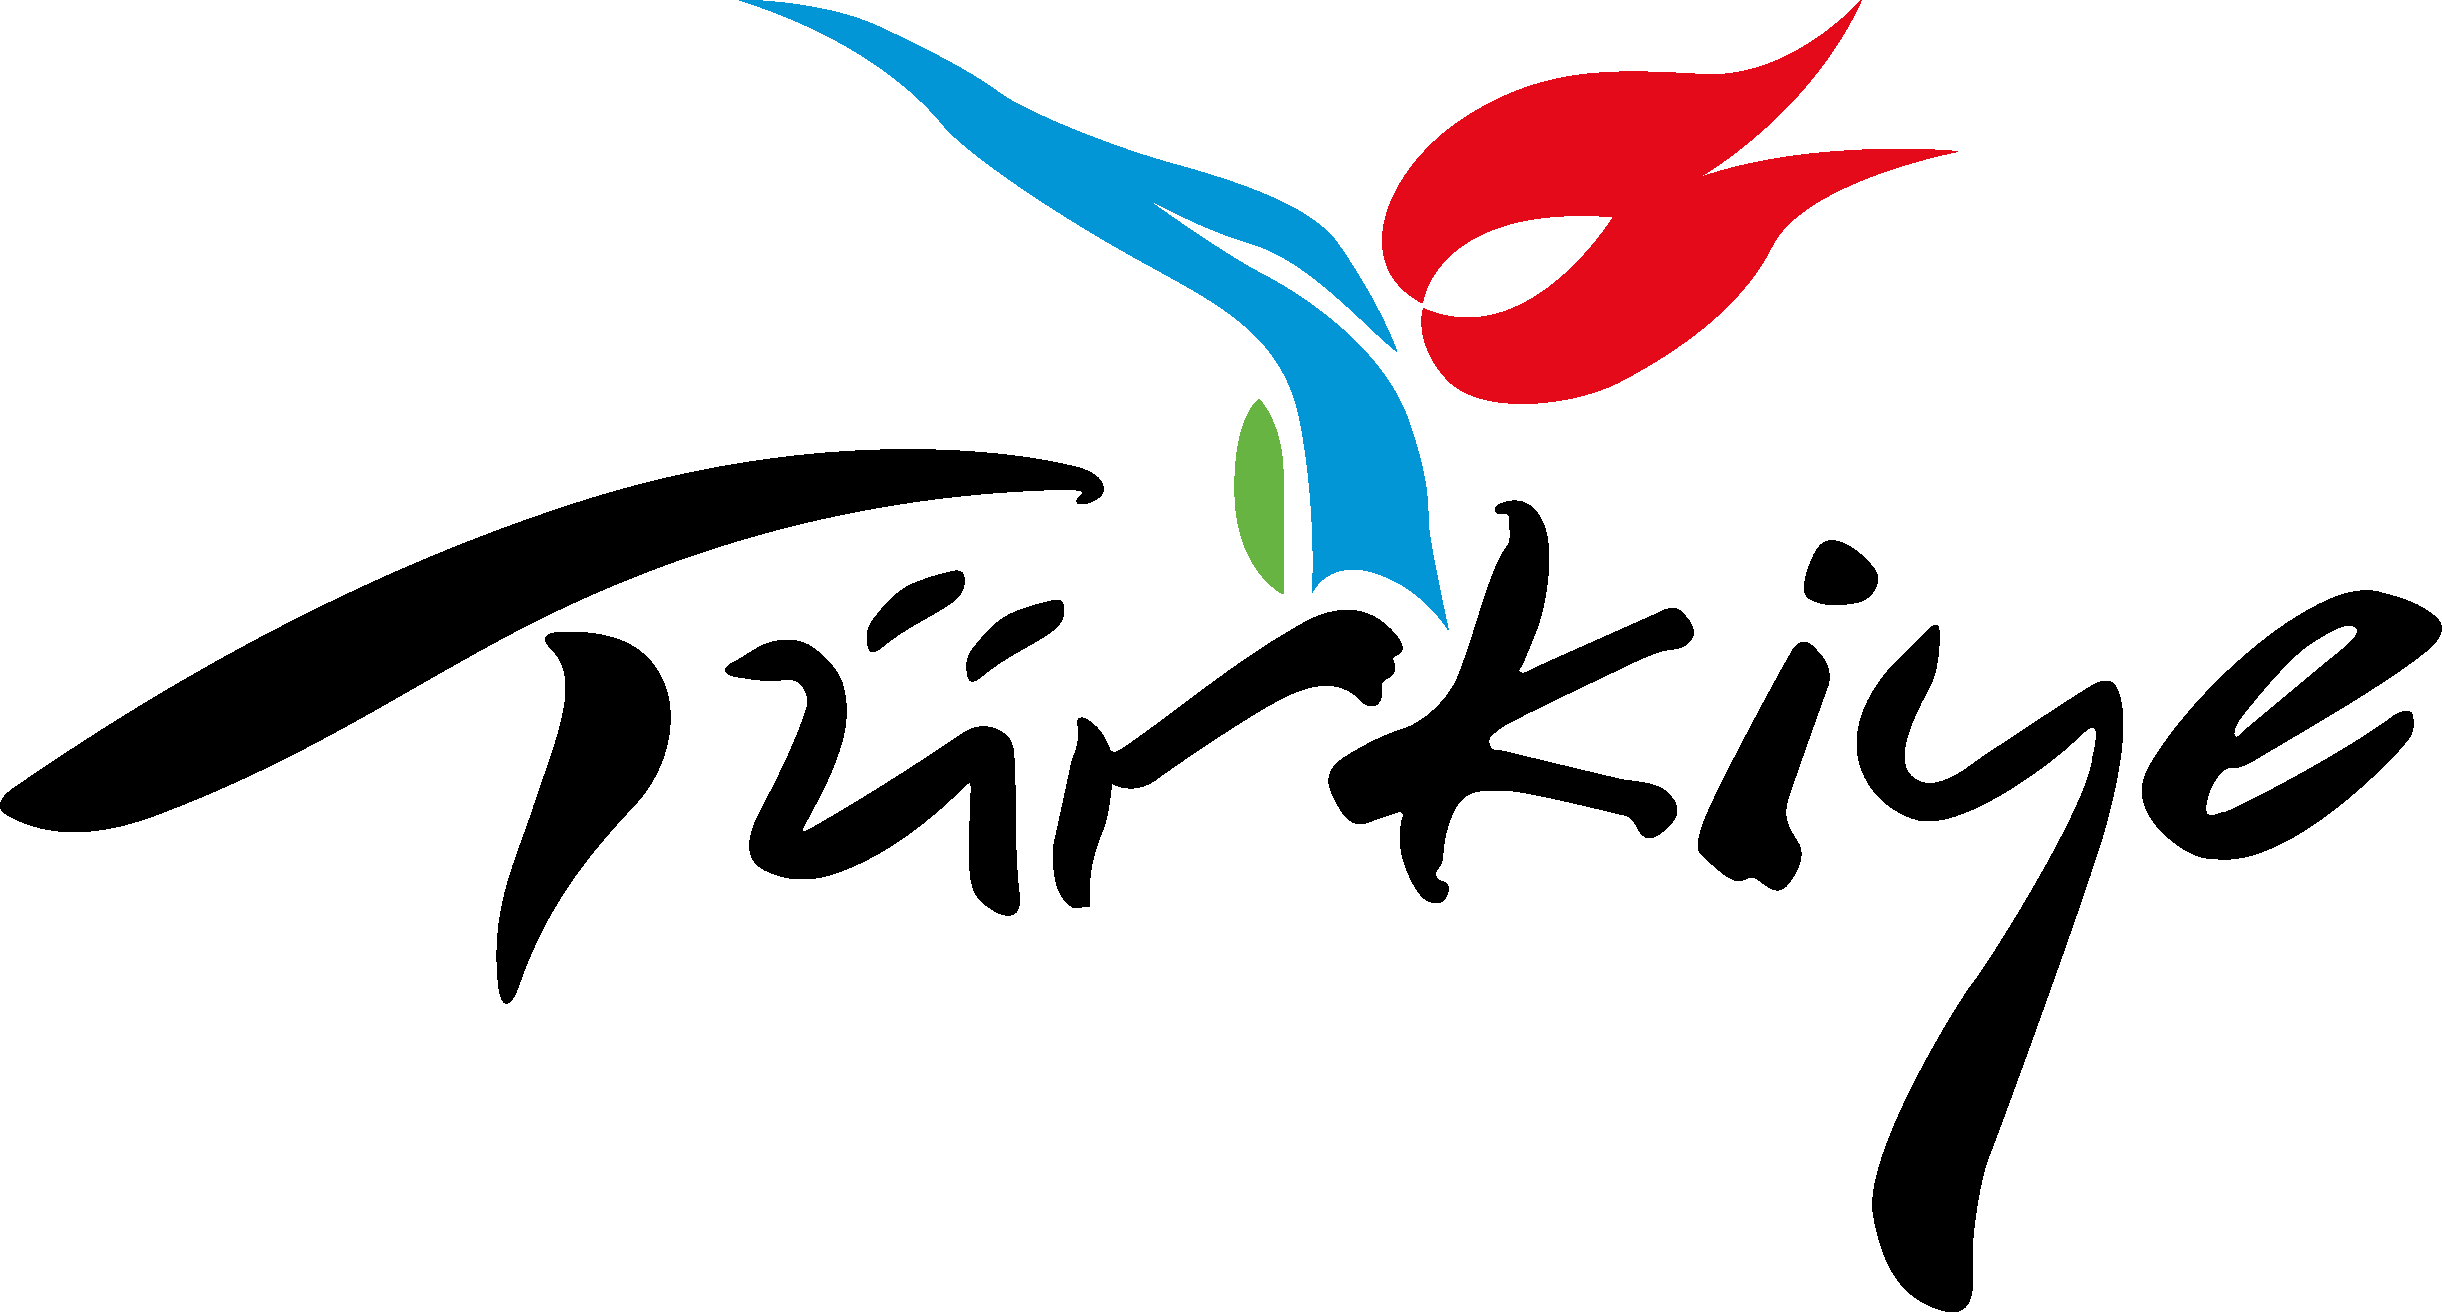 Turkiye Travel Logo [Turkey] png